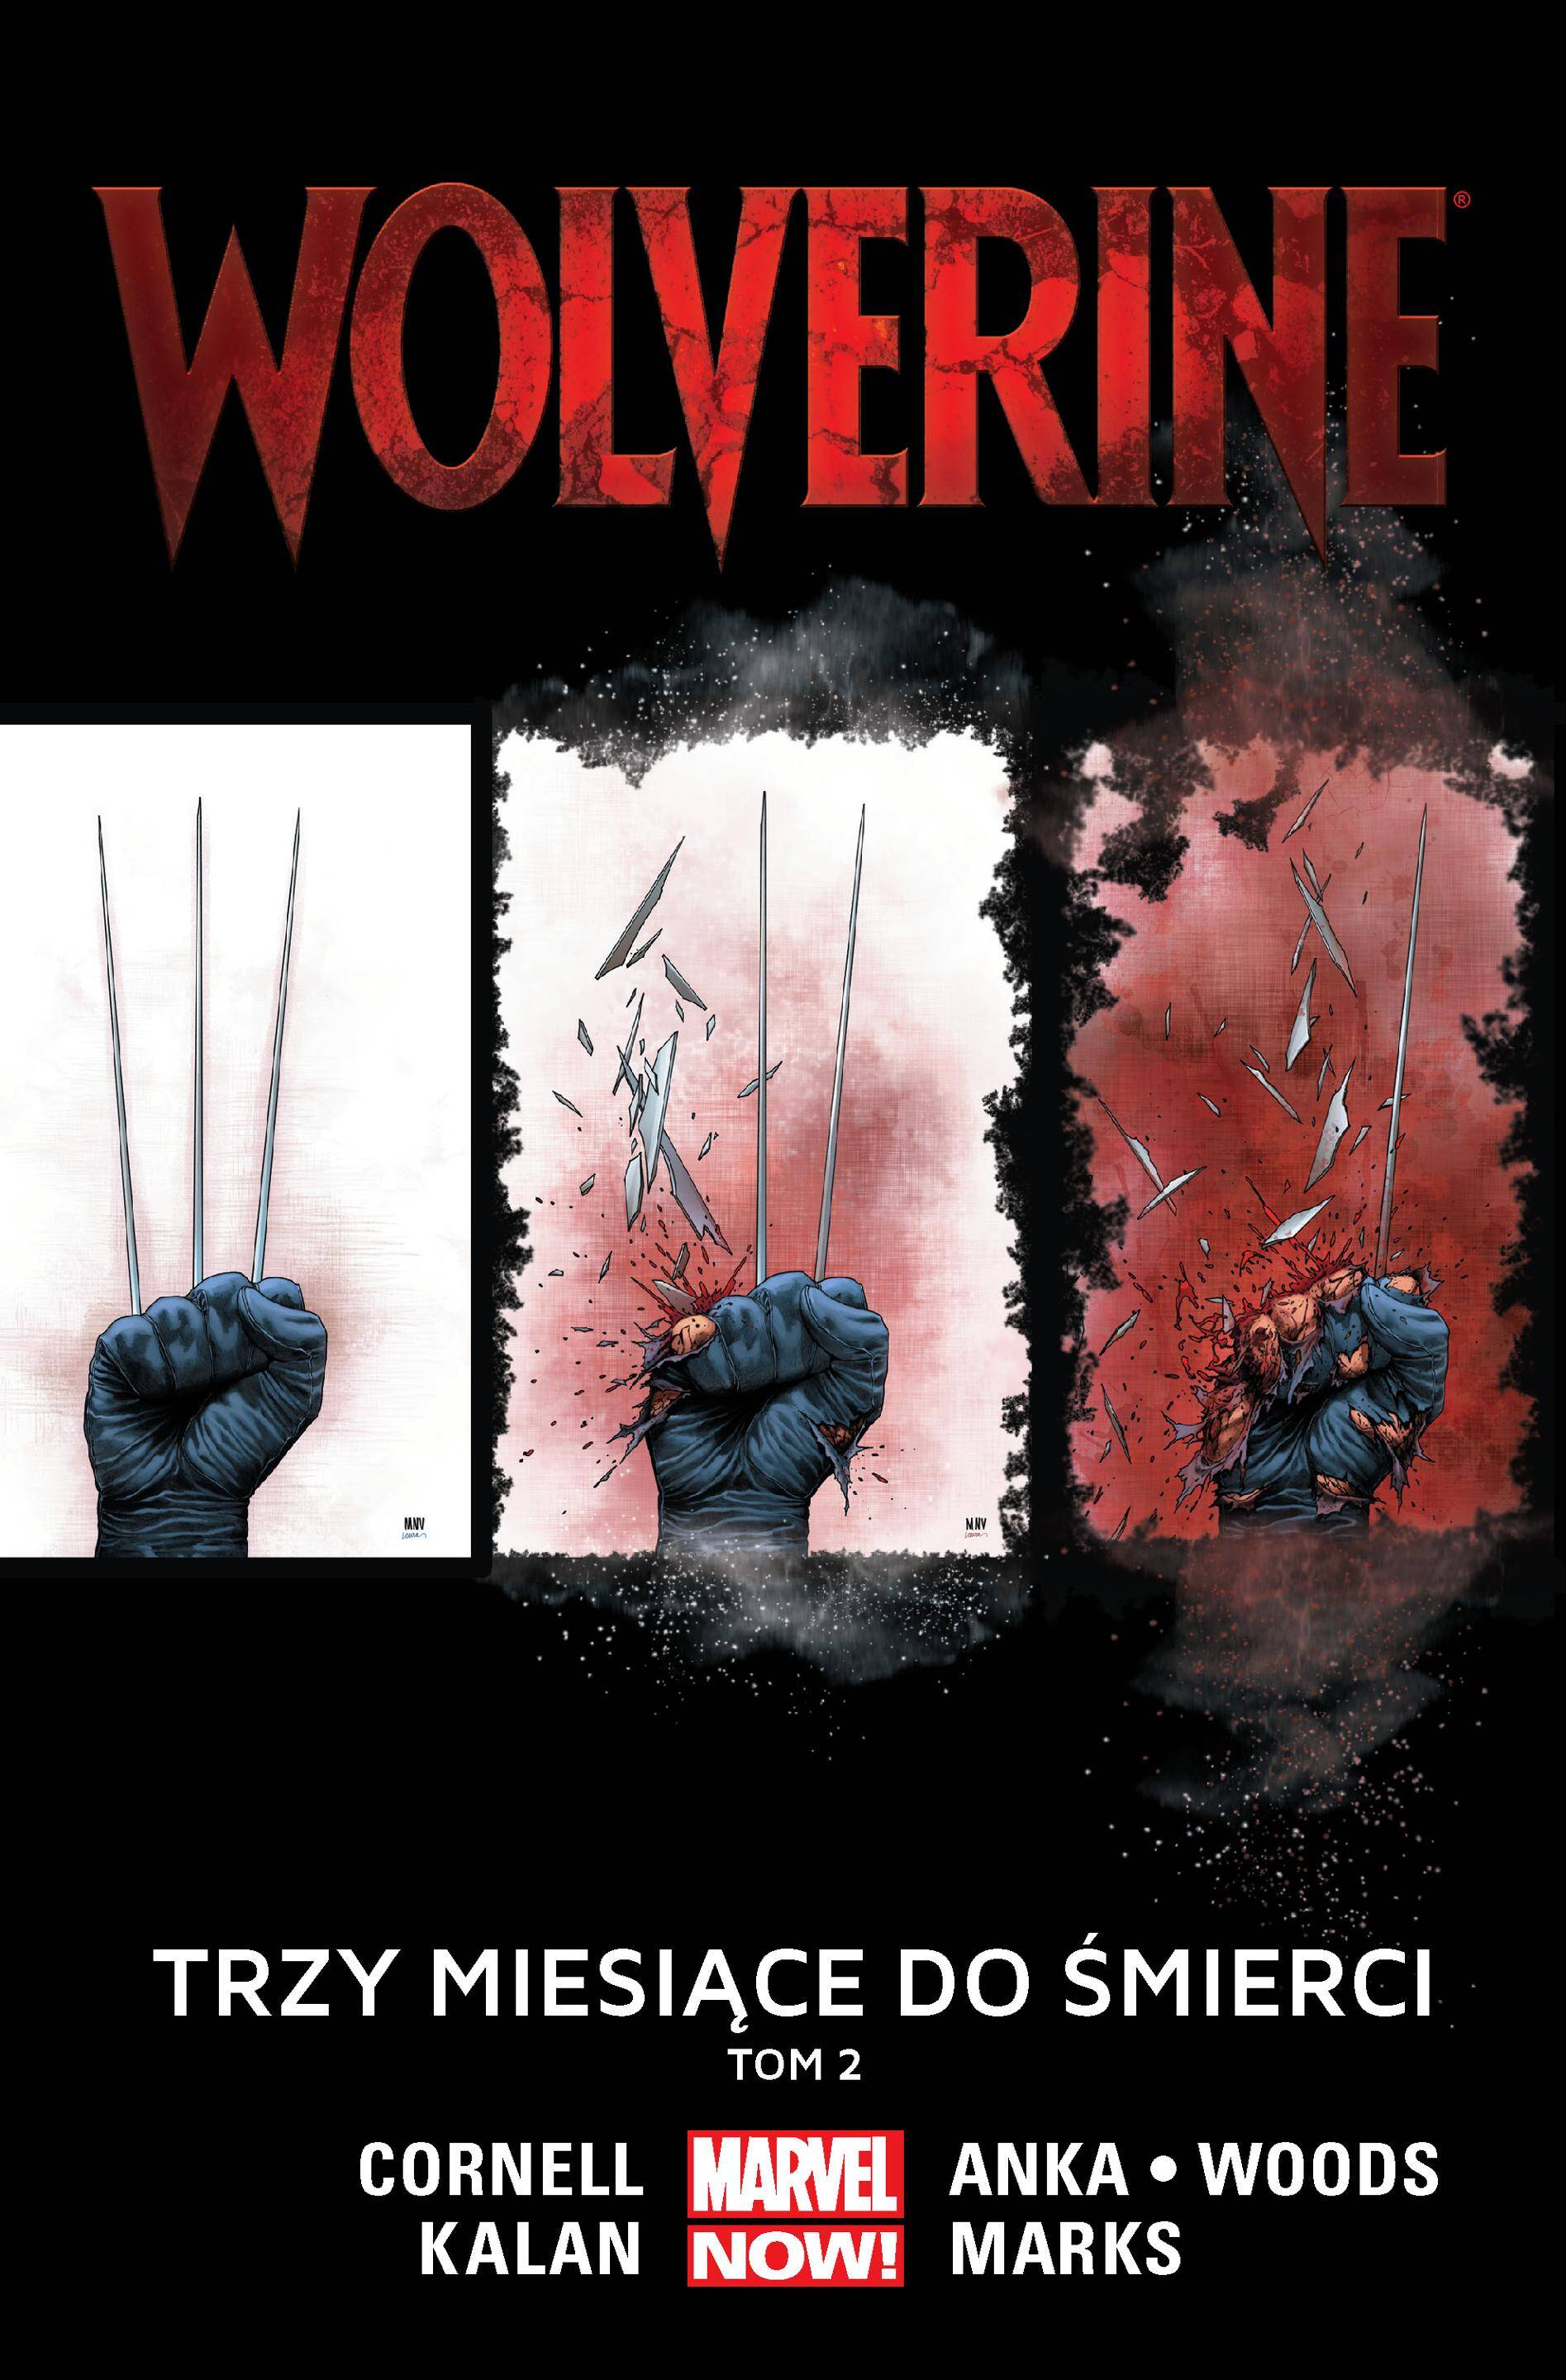 Trzy miesiące do śmierci Wolverine Tom 2